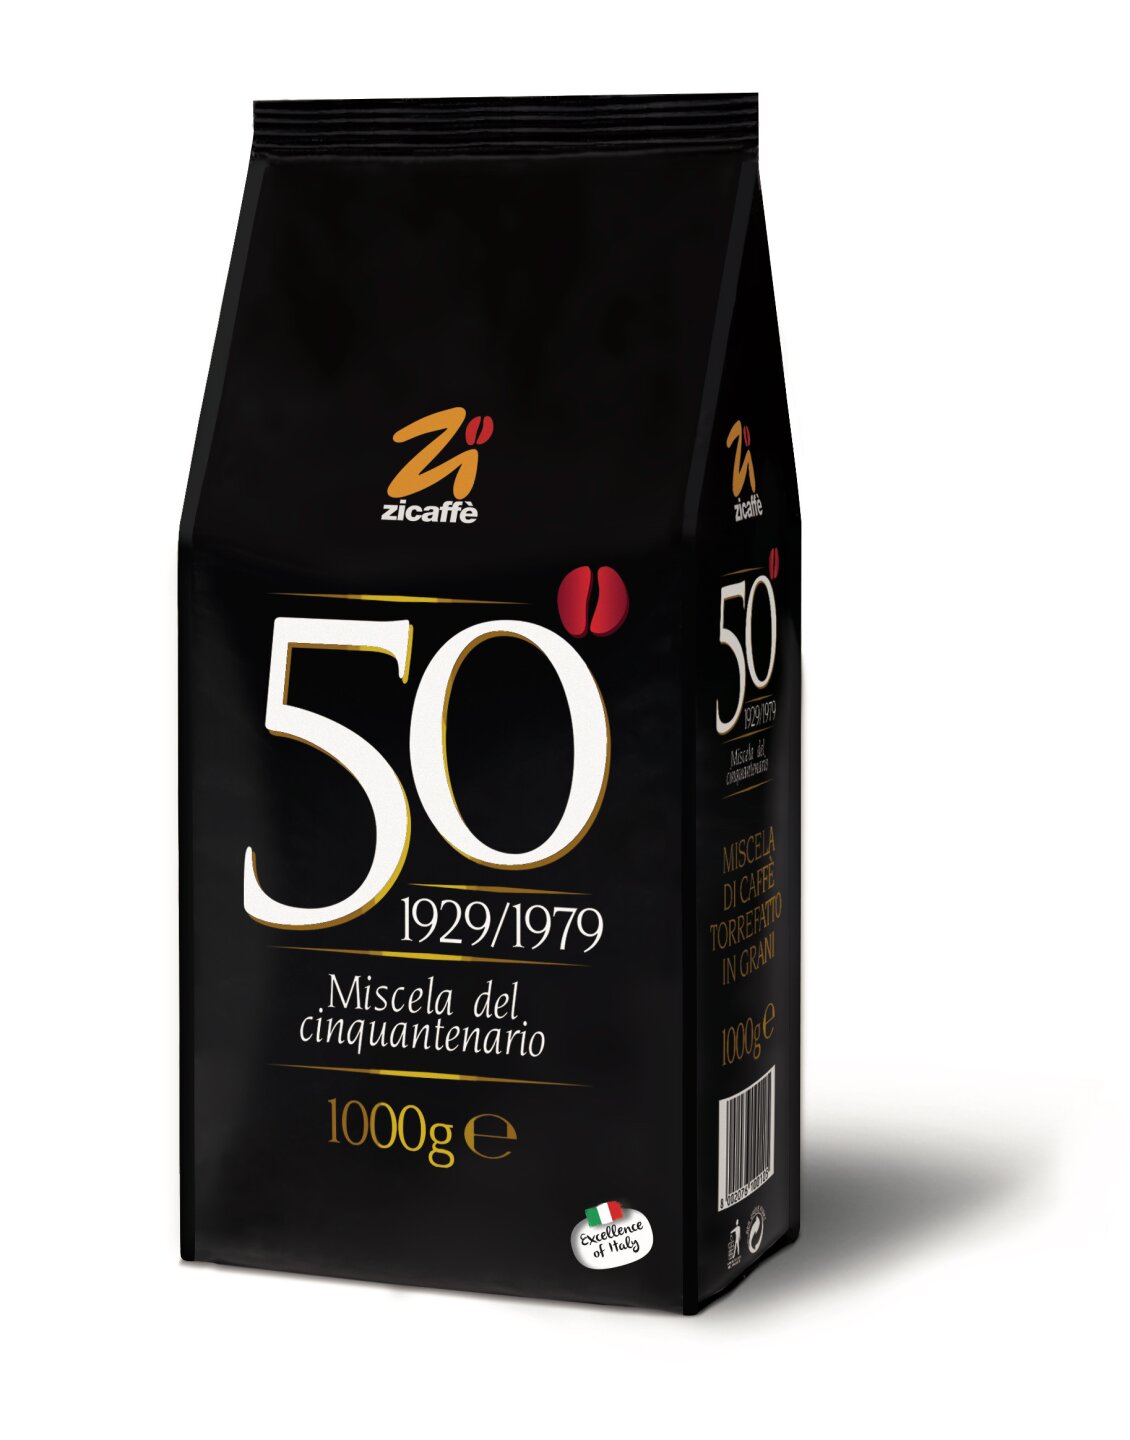 ZICAFFÈ Cinquantenario 50° ab 18,00 EUR bei Crifalu Kaffee günstig online kaufen